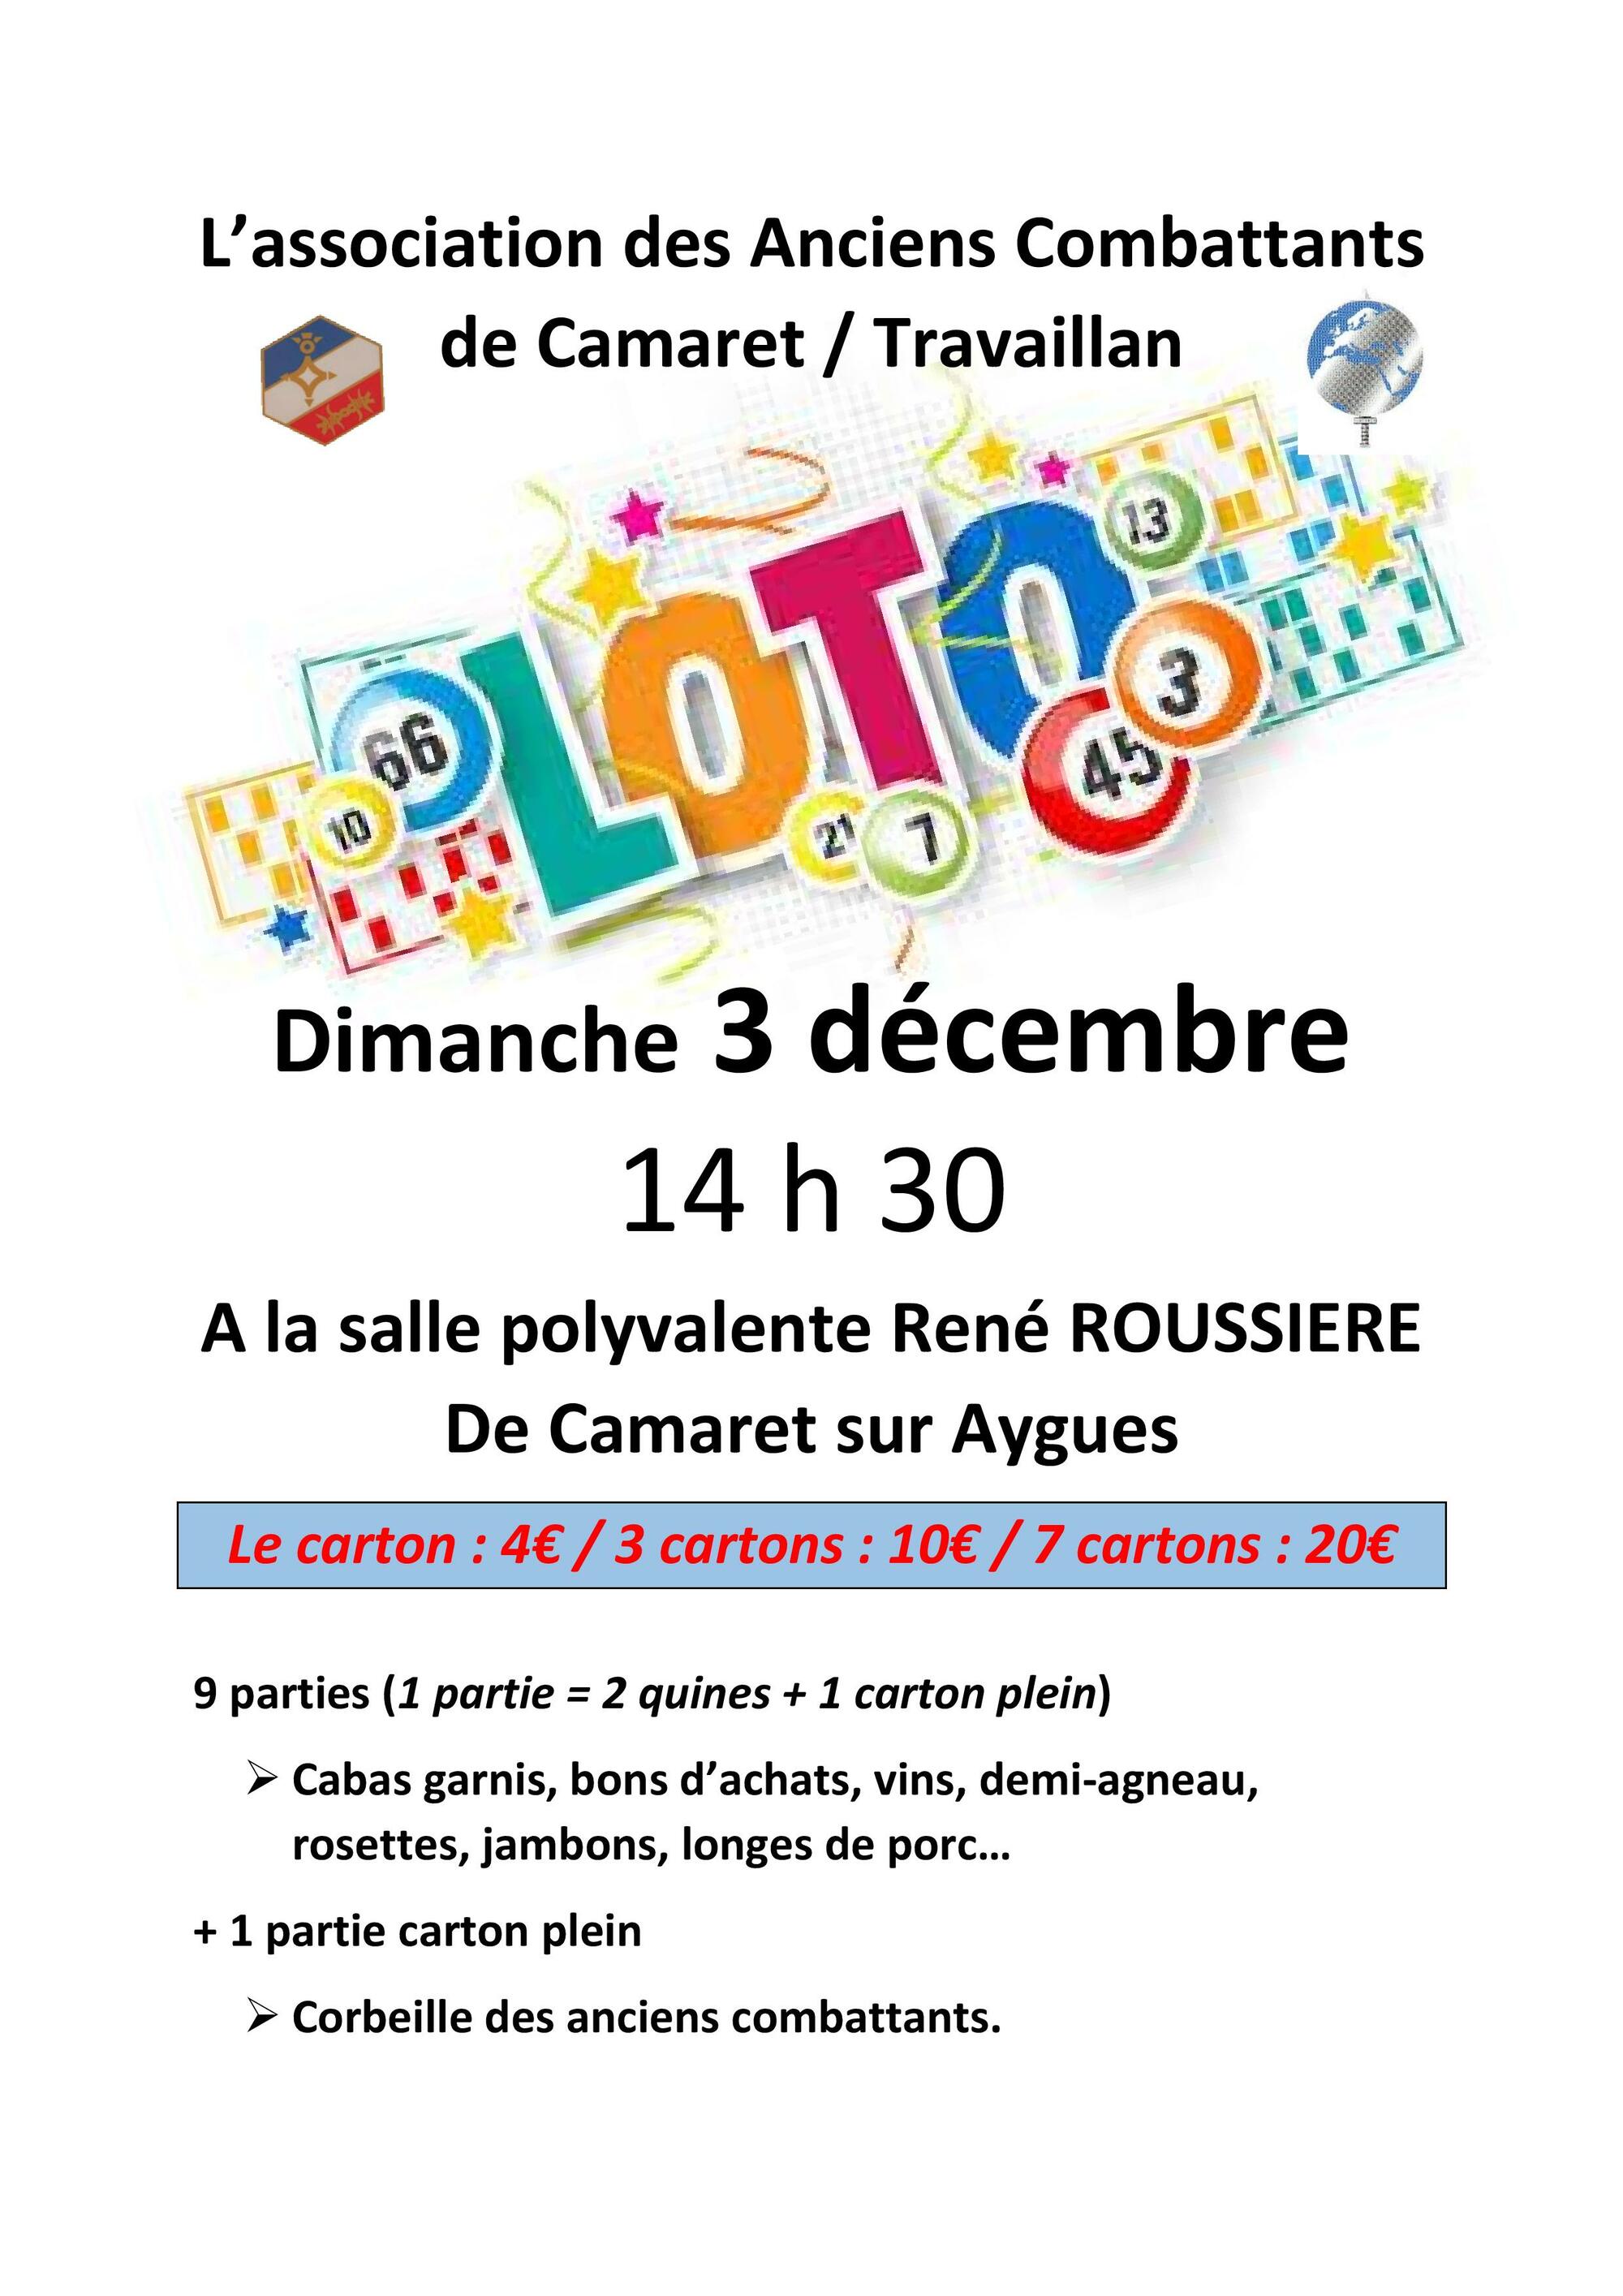 Loto du CATM Camaret / Travaillan le dimanche 3 décembre à 14h30 à la salle René Roussière